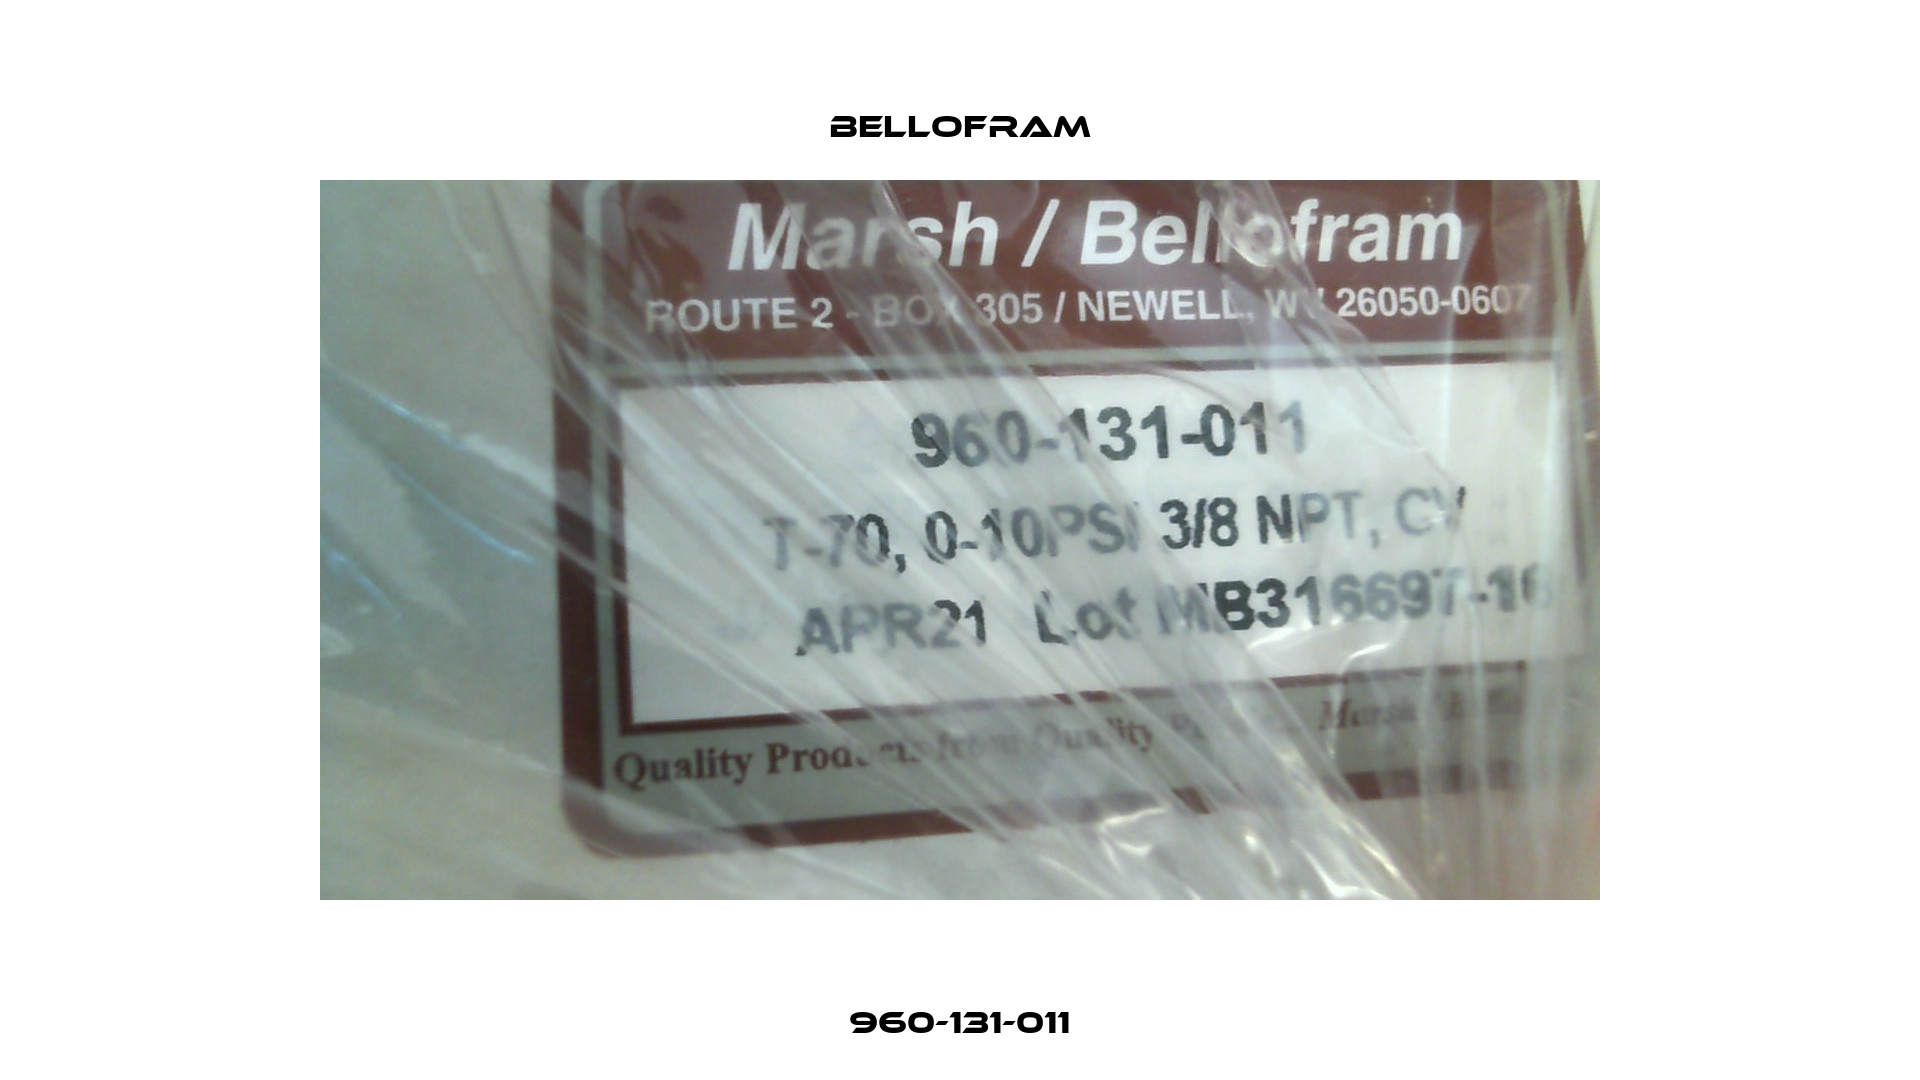 960-131-011 Bellofram